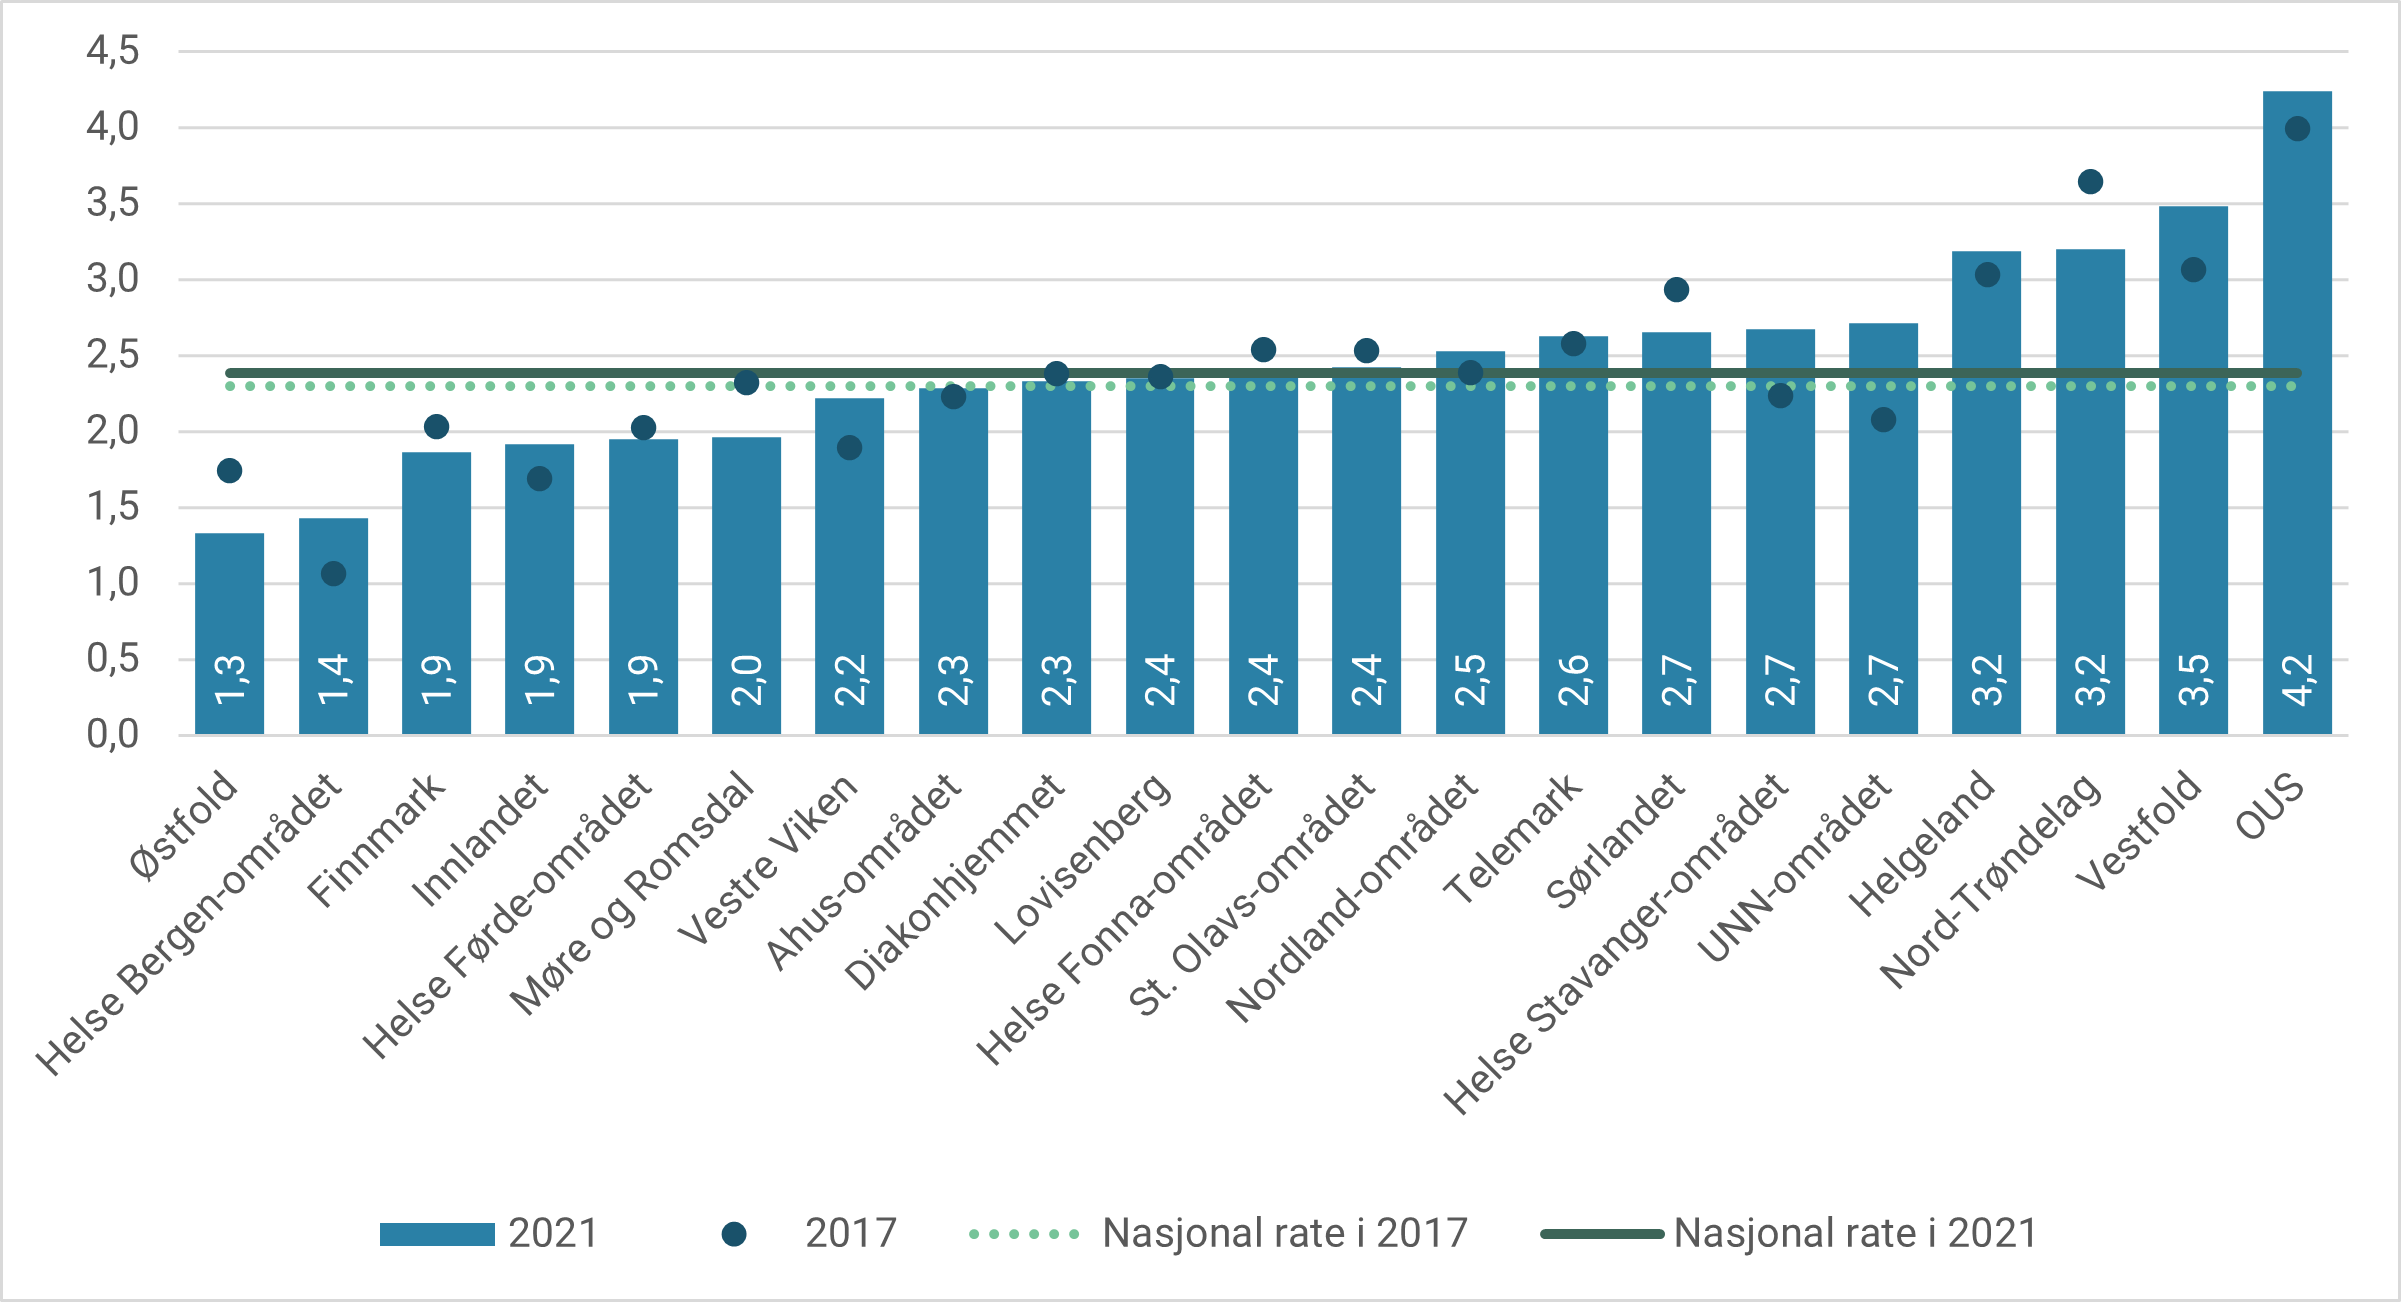 Figur 4.3: Voksne habiliteringspasienter per 1 000 innbyggere etter foretaksområde. 2017 og 2021.